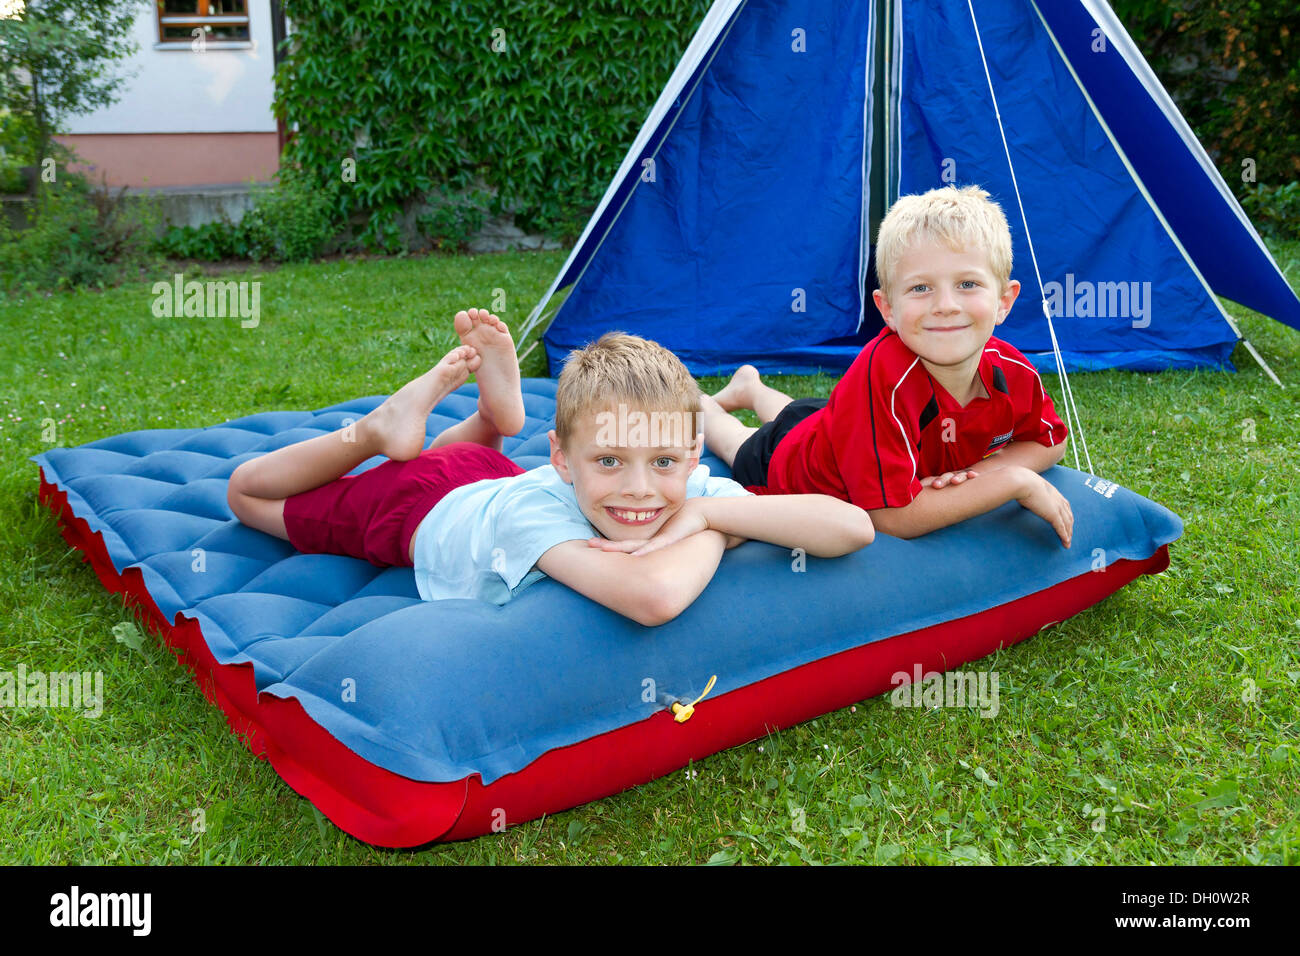 Zwei jungen beim camping im Garten auf einer Luftmatratze liegend  Stockfotografie - Alamy